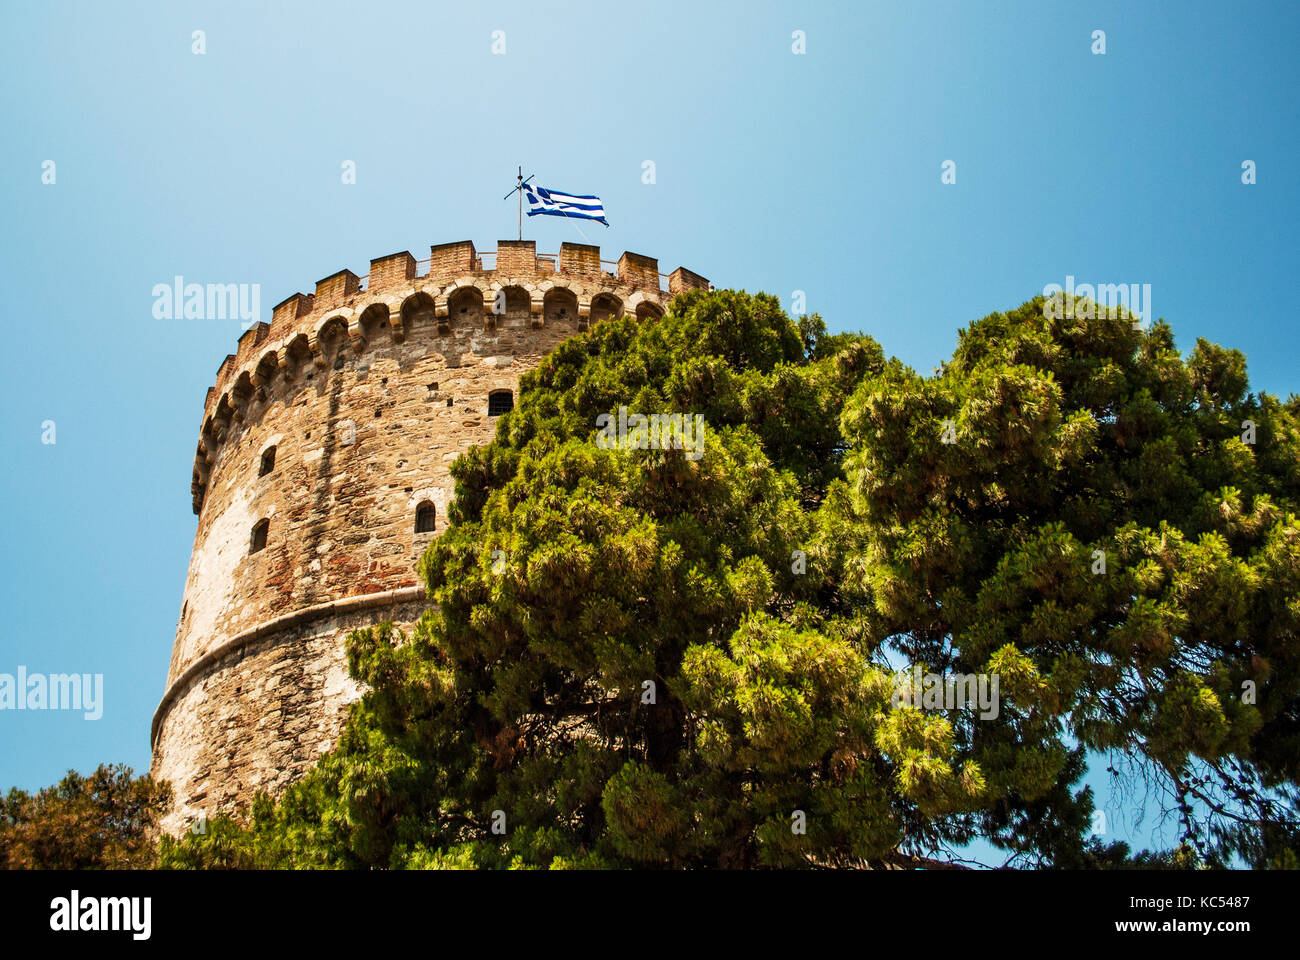 Der weiße Turm von Thessaloniki. Das Symbol der Stadt Thessaloniki in Griechenland. alte mittelalterliche Turm Stockfoto